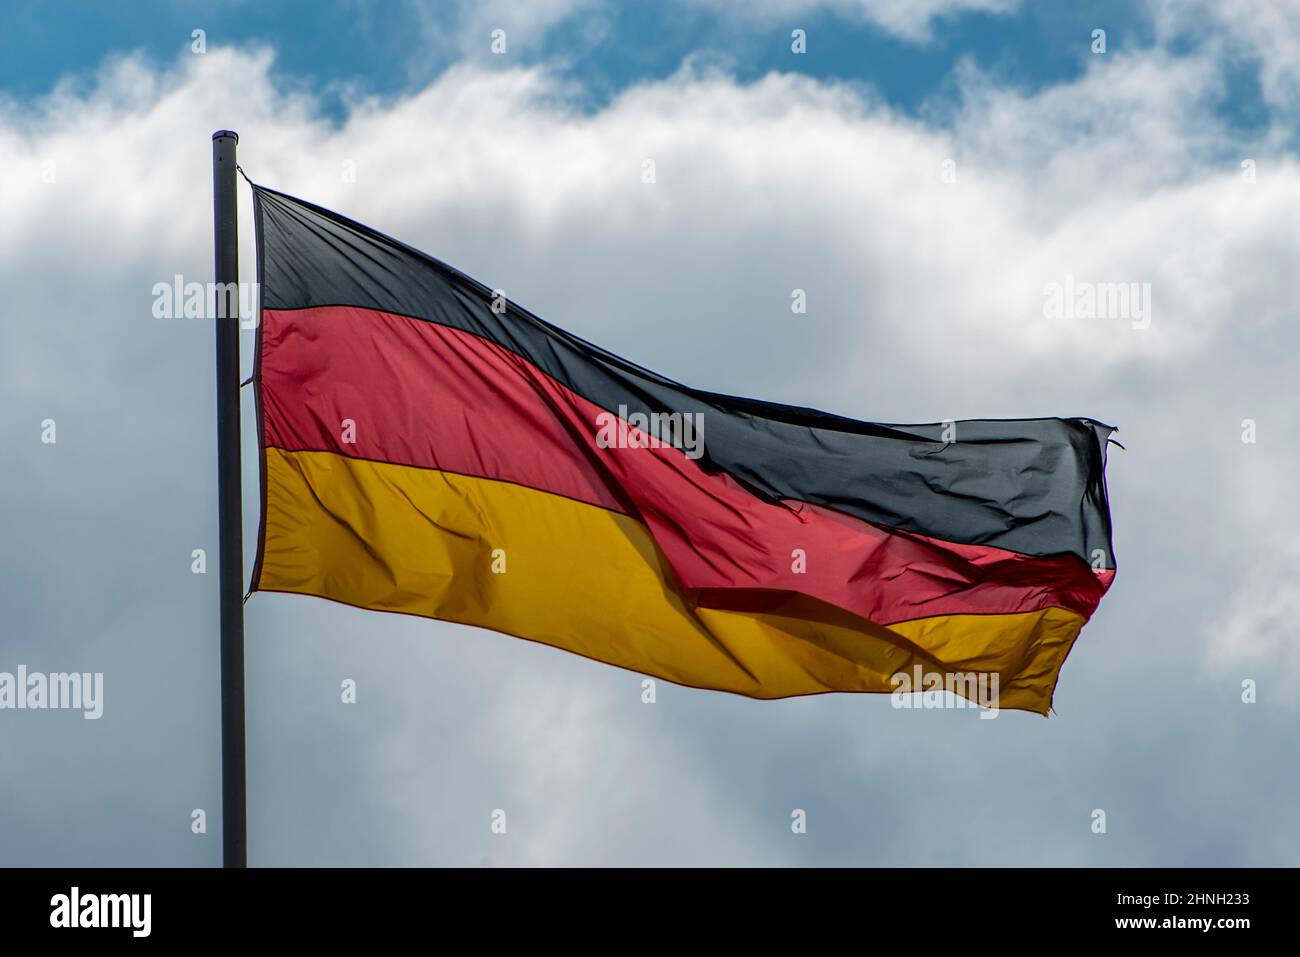 Bandiere tedesche ondeggiavano nel vento nel famoso edificio del Reichstag, sede del Parlamento tedesco (Deutscher Bundestag), in una giornata di sole con la zica blu Foto Stock